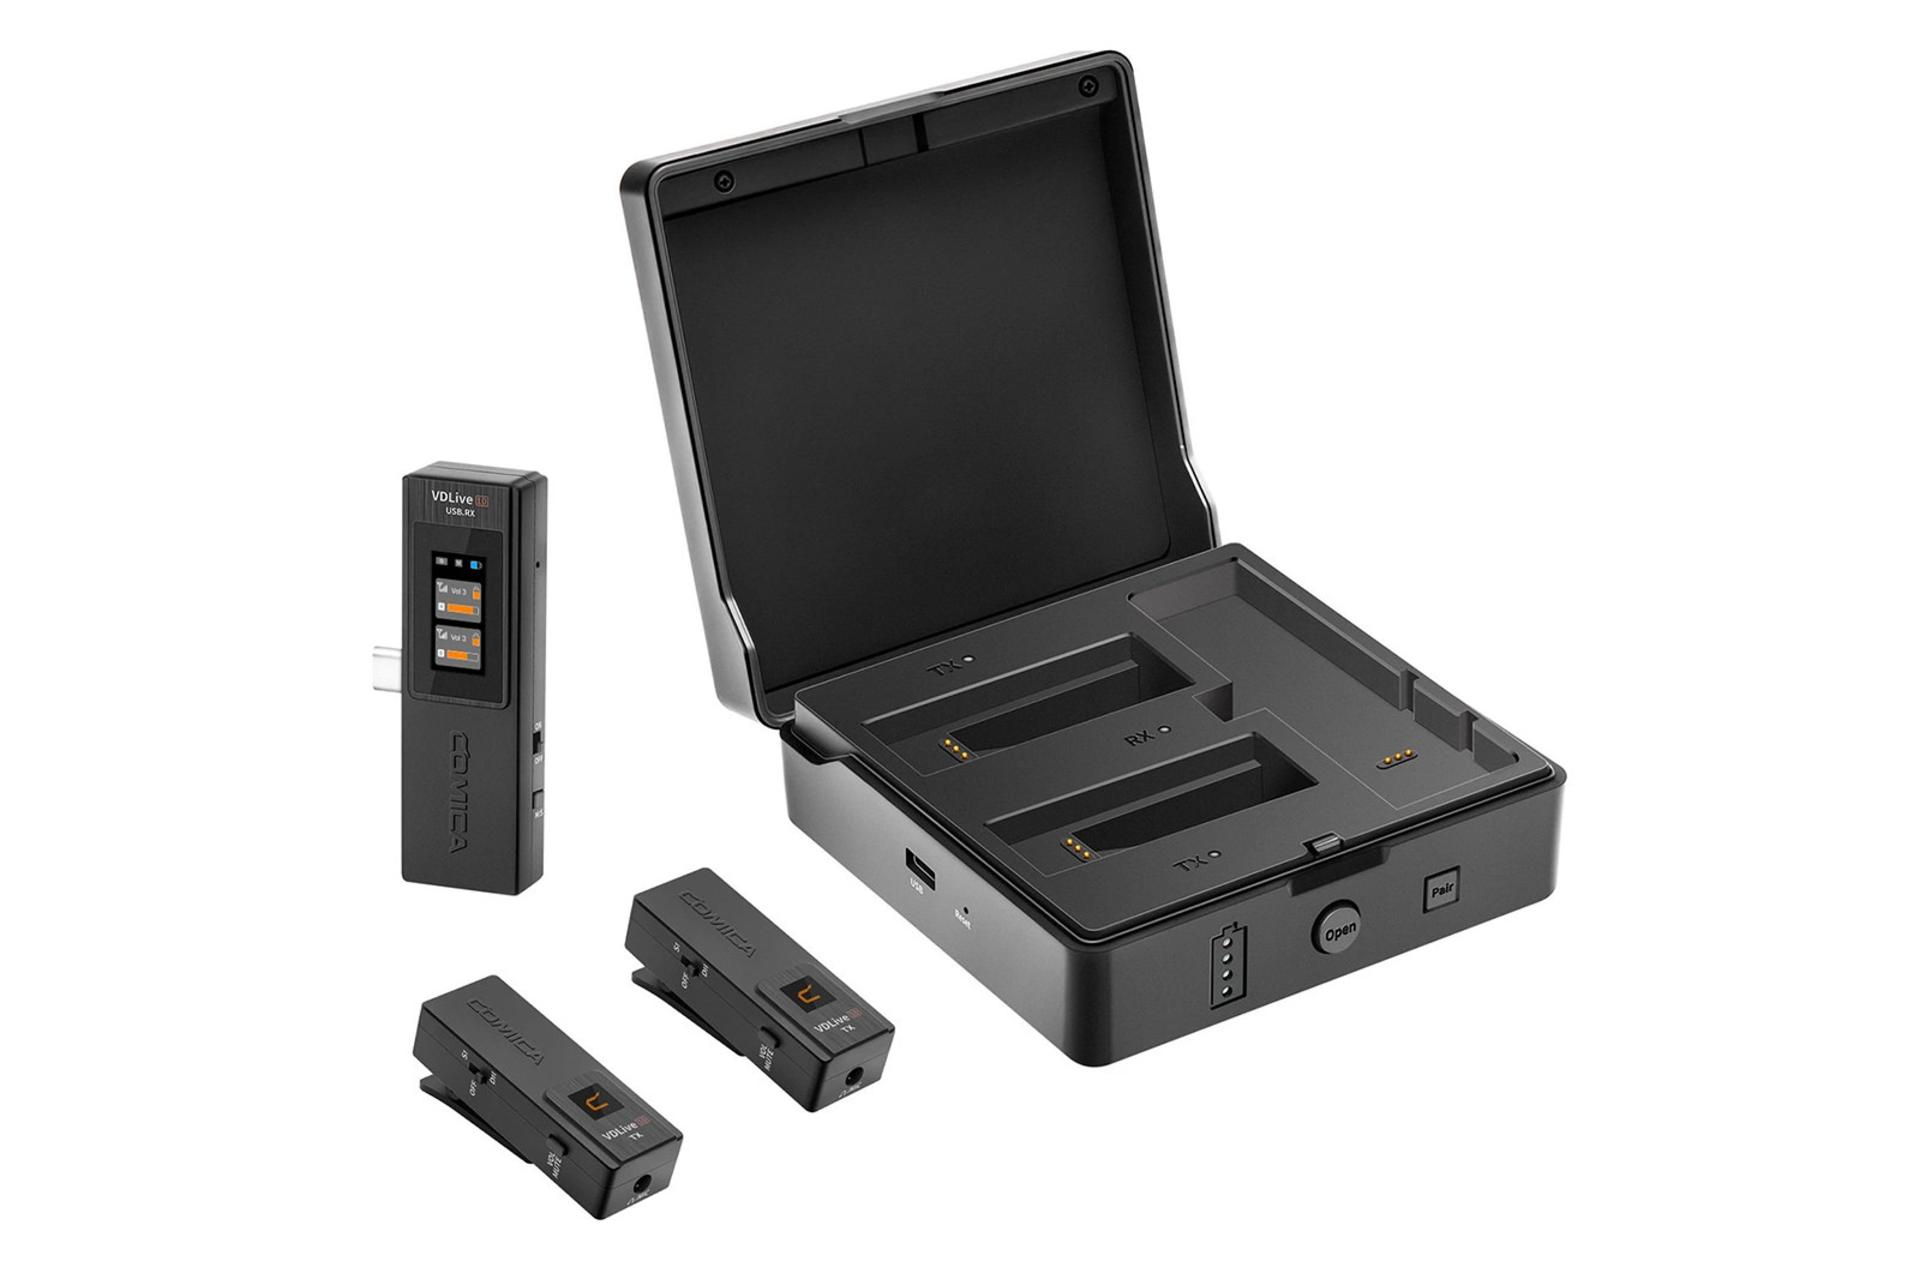 نمایش گیرنده و فرستنده‌های میکروفون کامیکا VDLive10 USB در کنار کیف قابل شارژ